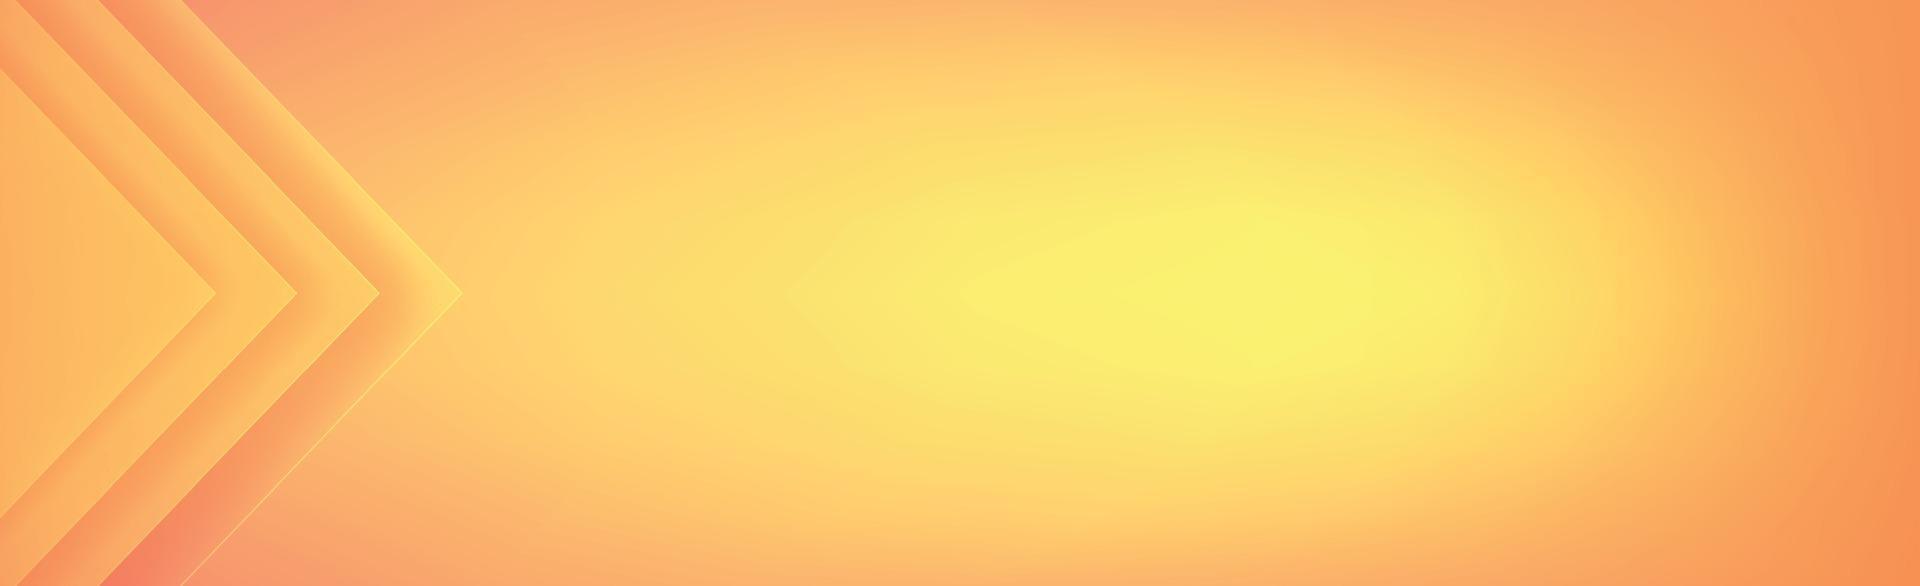 gul - orange panoramabakgrund med trianglar - vektor